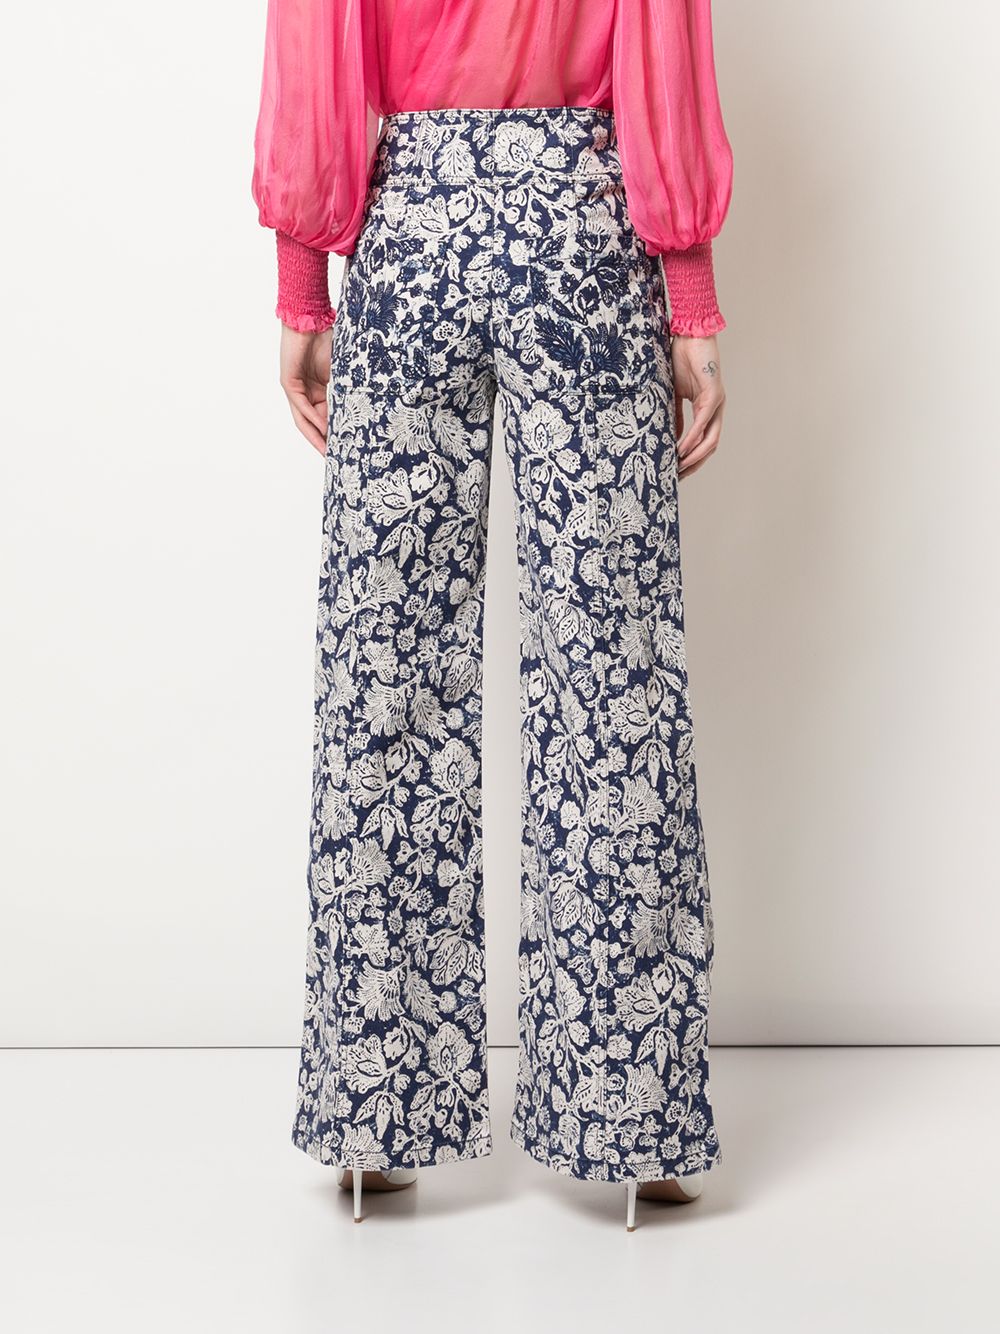 фото Ulla johnson джинсы greer с цветочным принтом